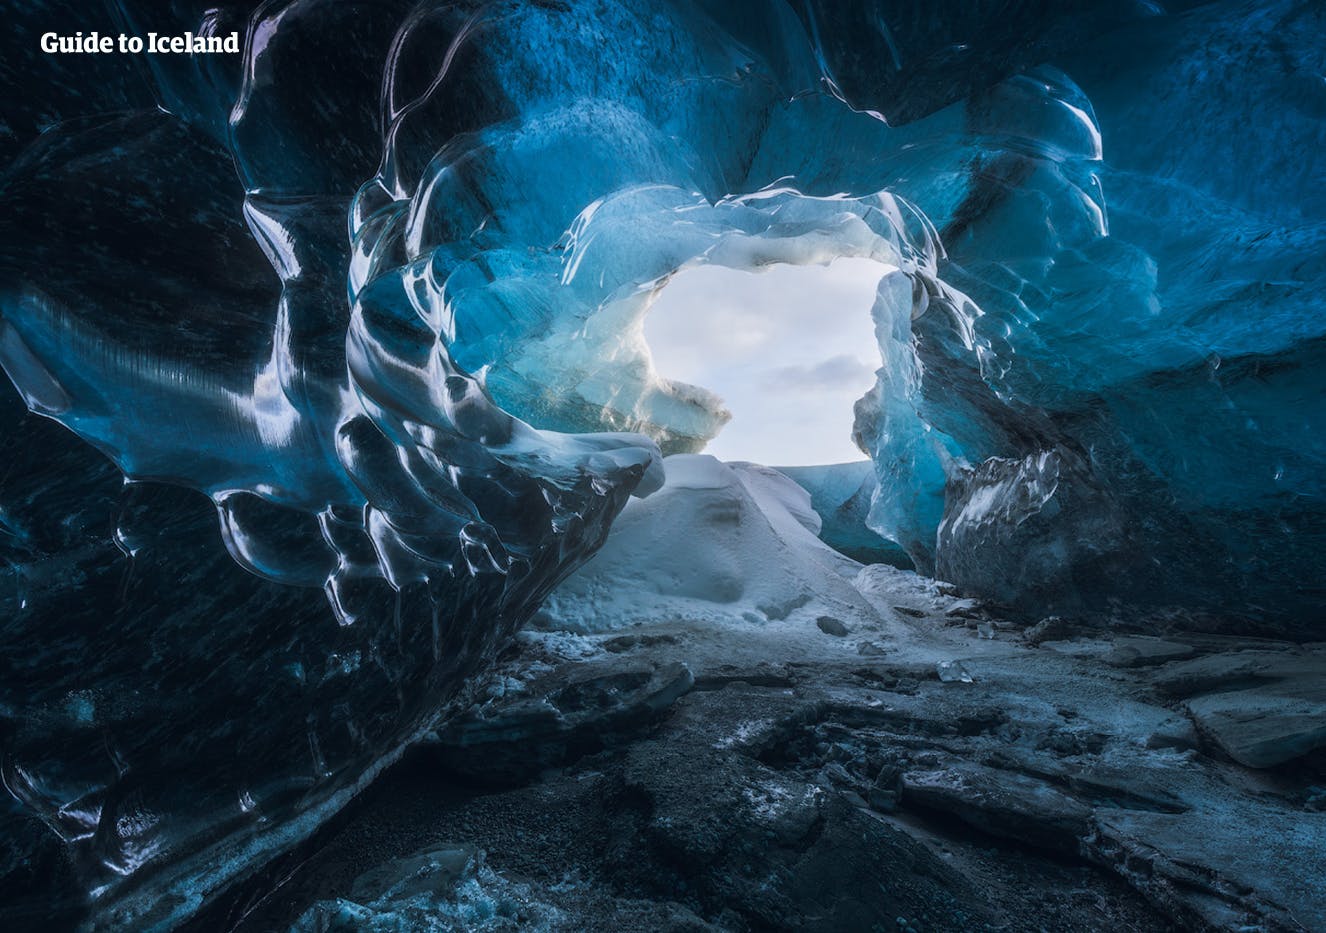 参加冰岛冬季特有的蓝冰洞旅行团，亲自见证阳光通过蓝冰洞后创造的美景